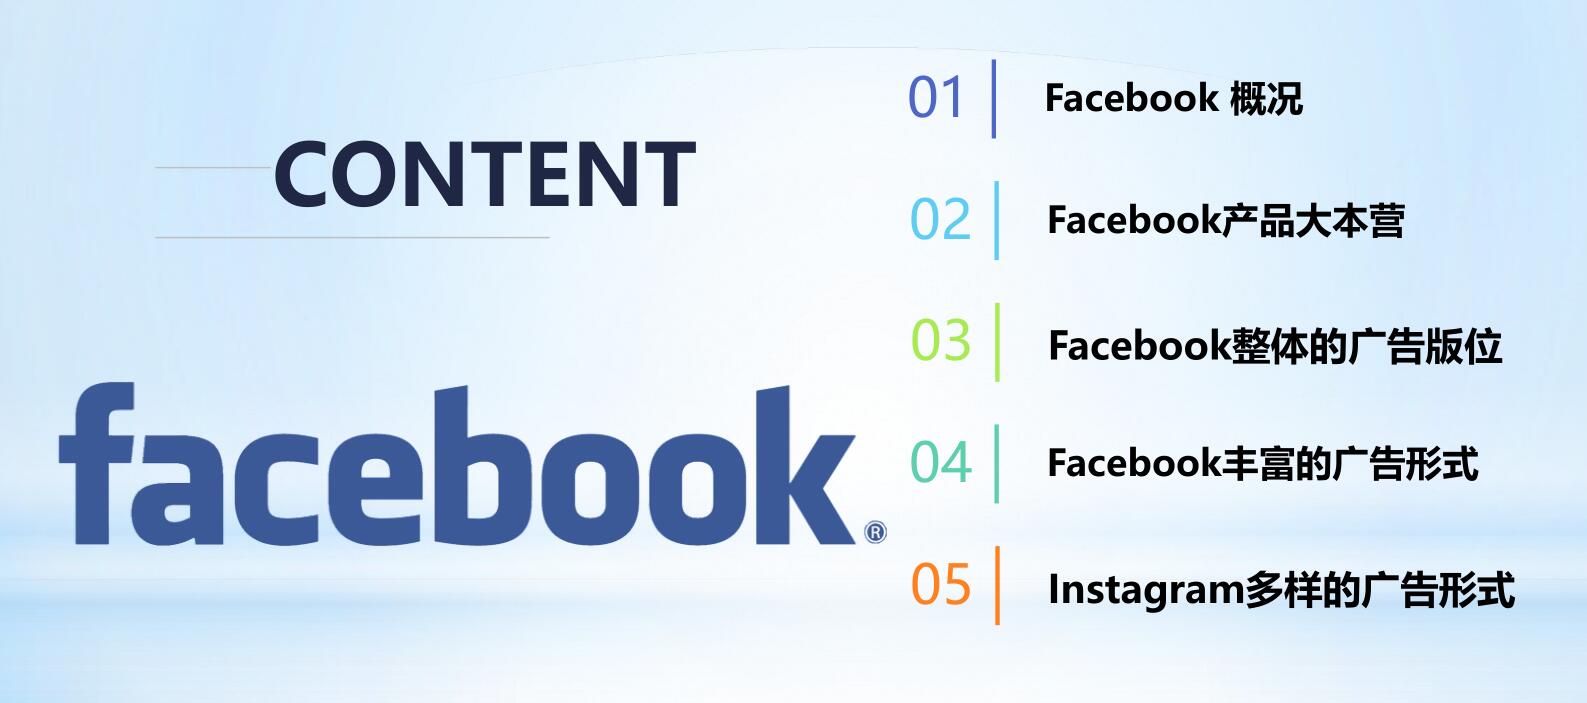 Facebook产品大本营及Facebook整体的广告形式讲解